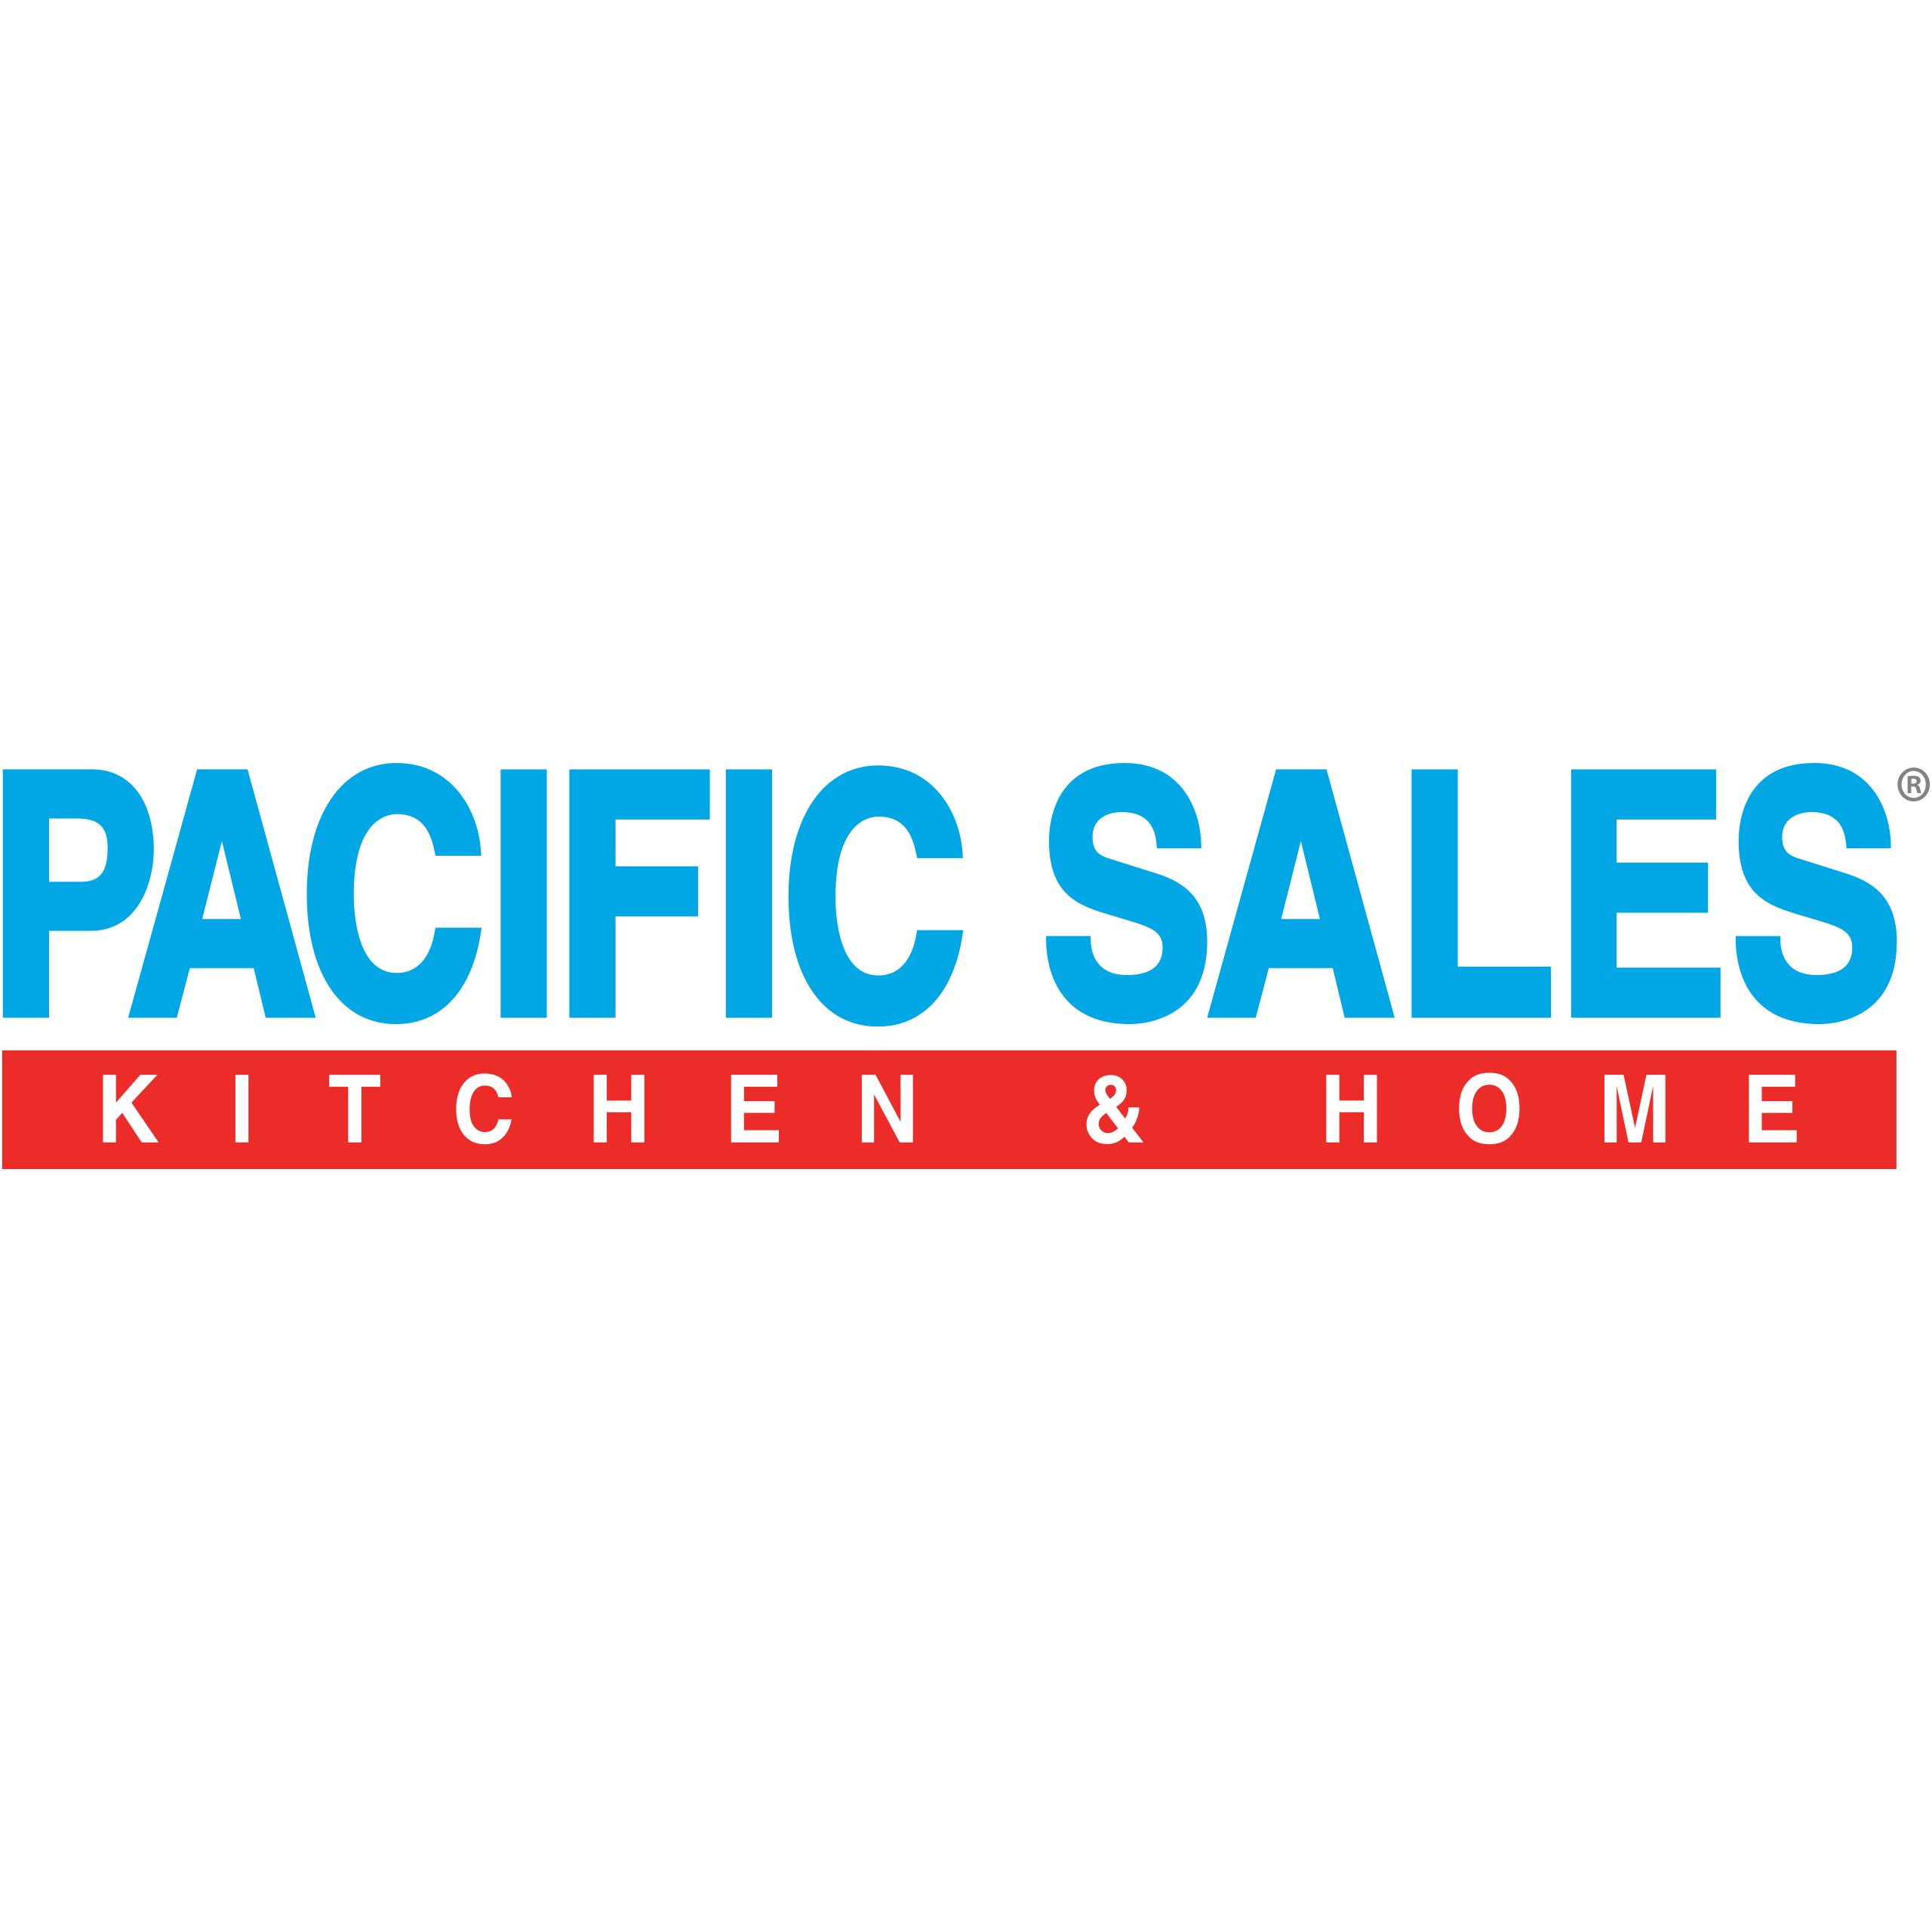 Pacific Sales Kitchen & Home Valencia - Valencia, CA 91355 - (661)294-4400 | ShowMeLocal.com